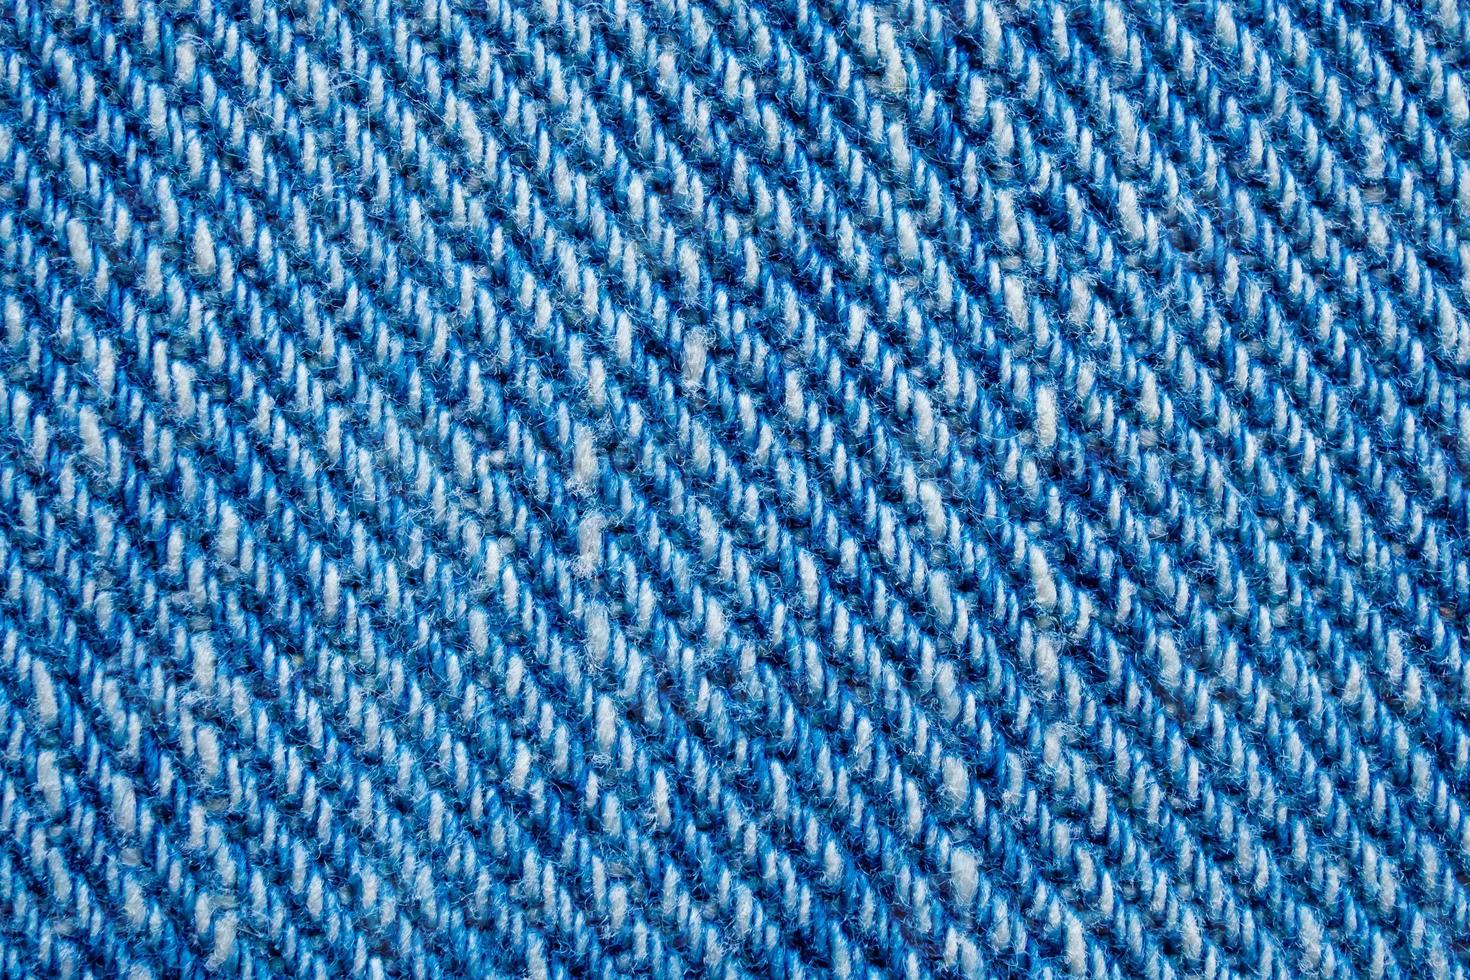 fundo de padrão de textura de jeans azul foto